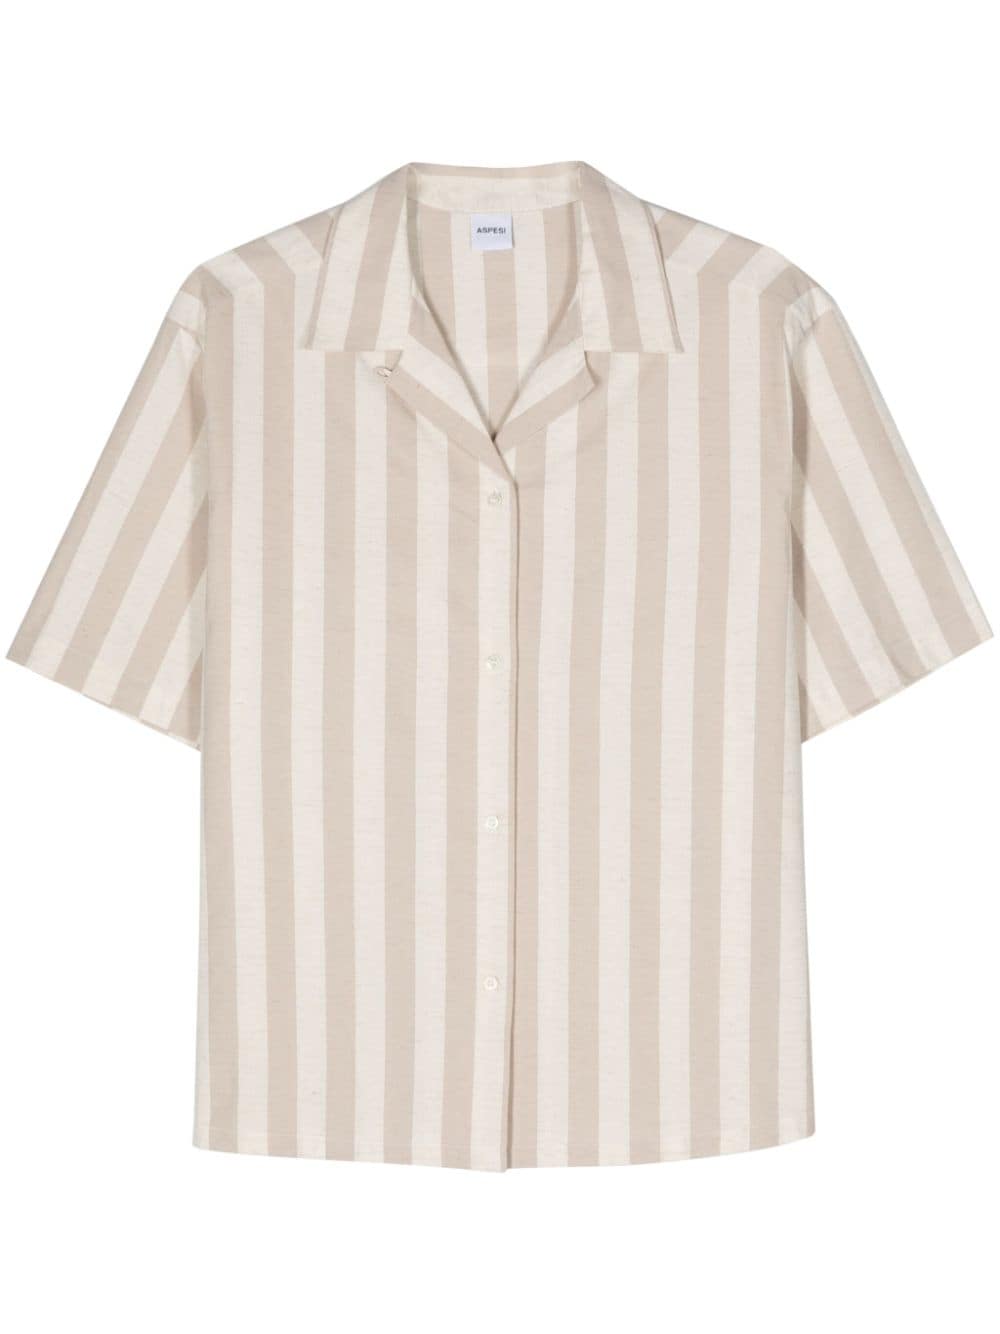 ASPESI striped slub-texture shirt - Neutrals von ASPESI